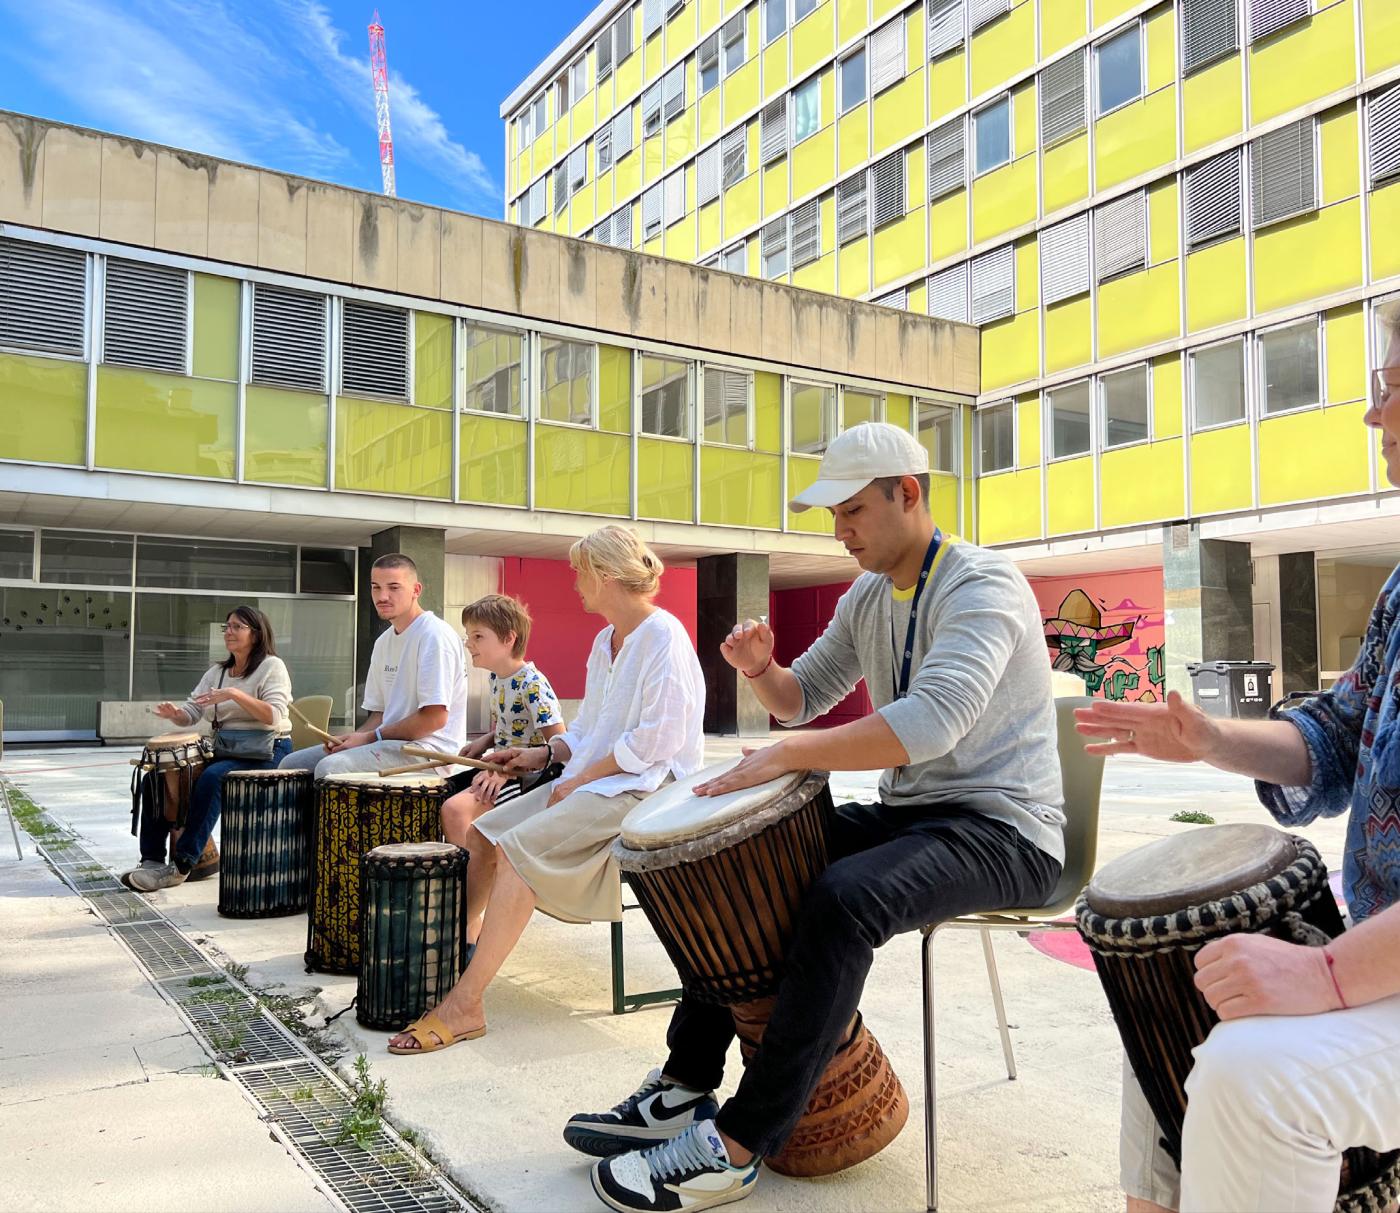 Des gens qui jouent de la percussion dans la cour d'un immeuble